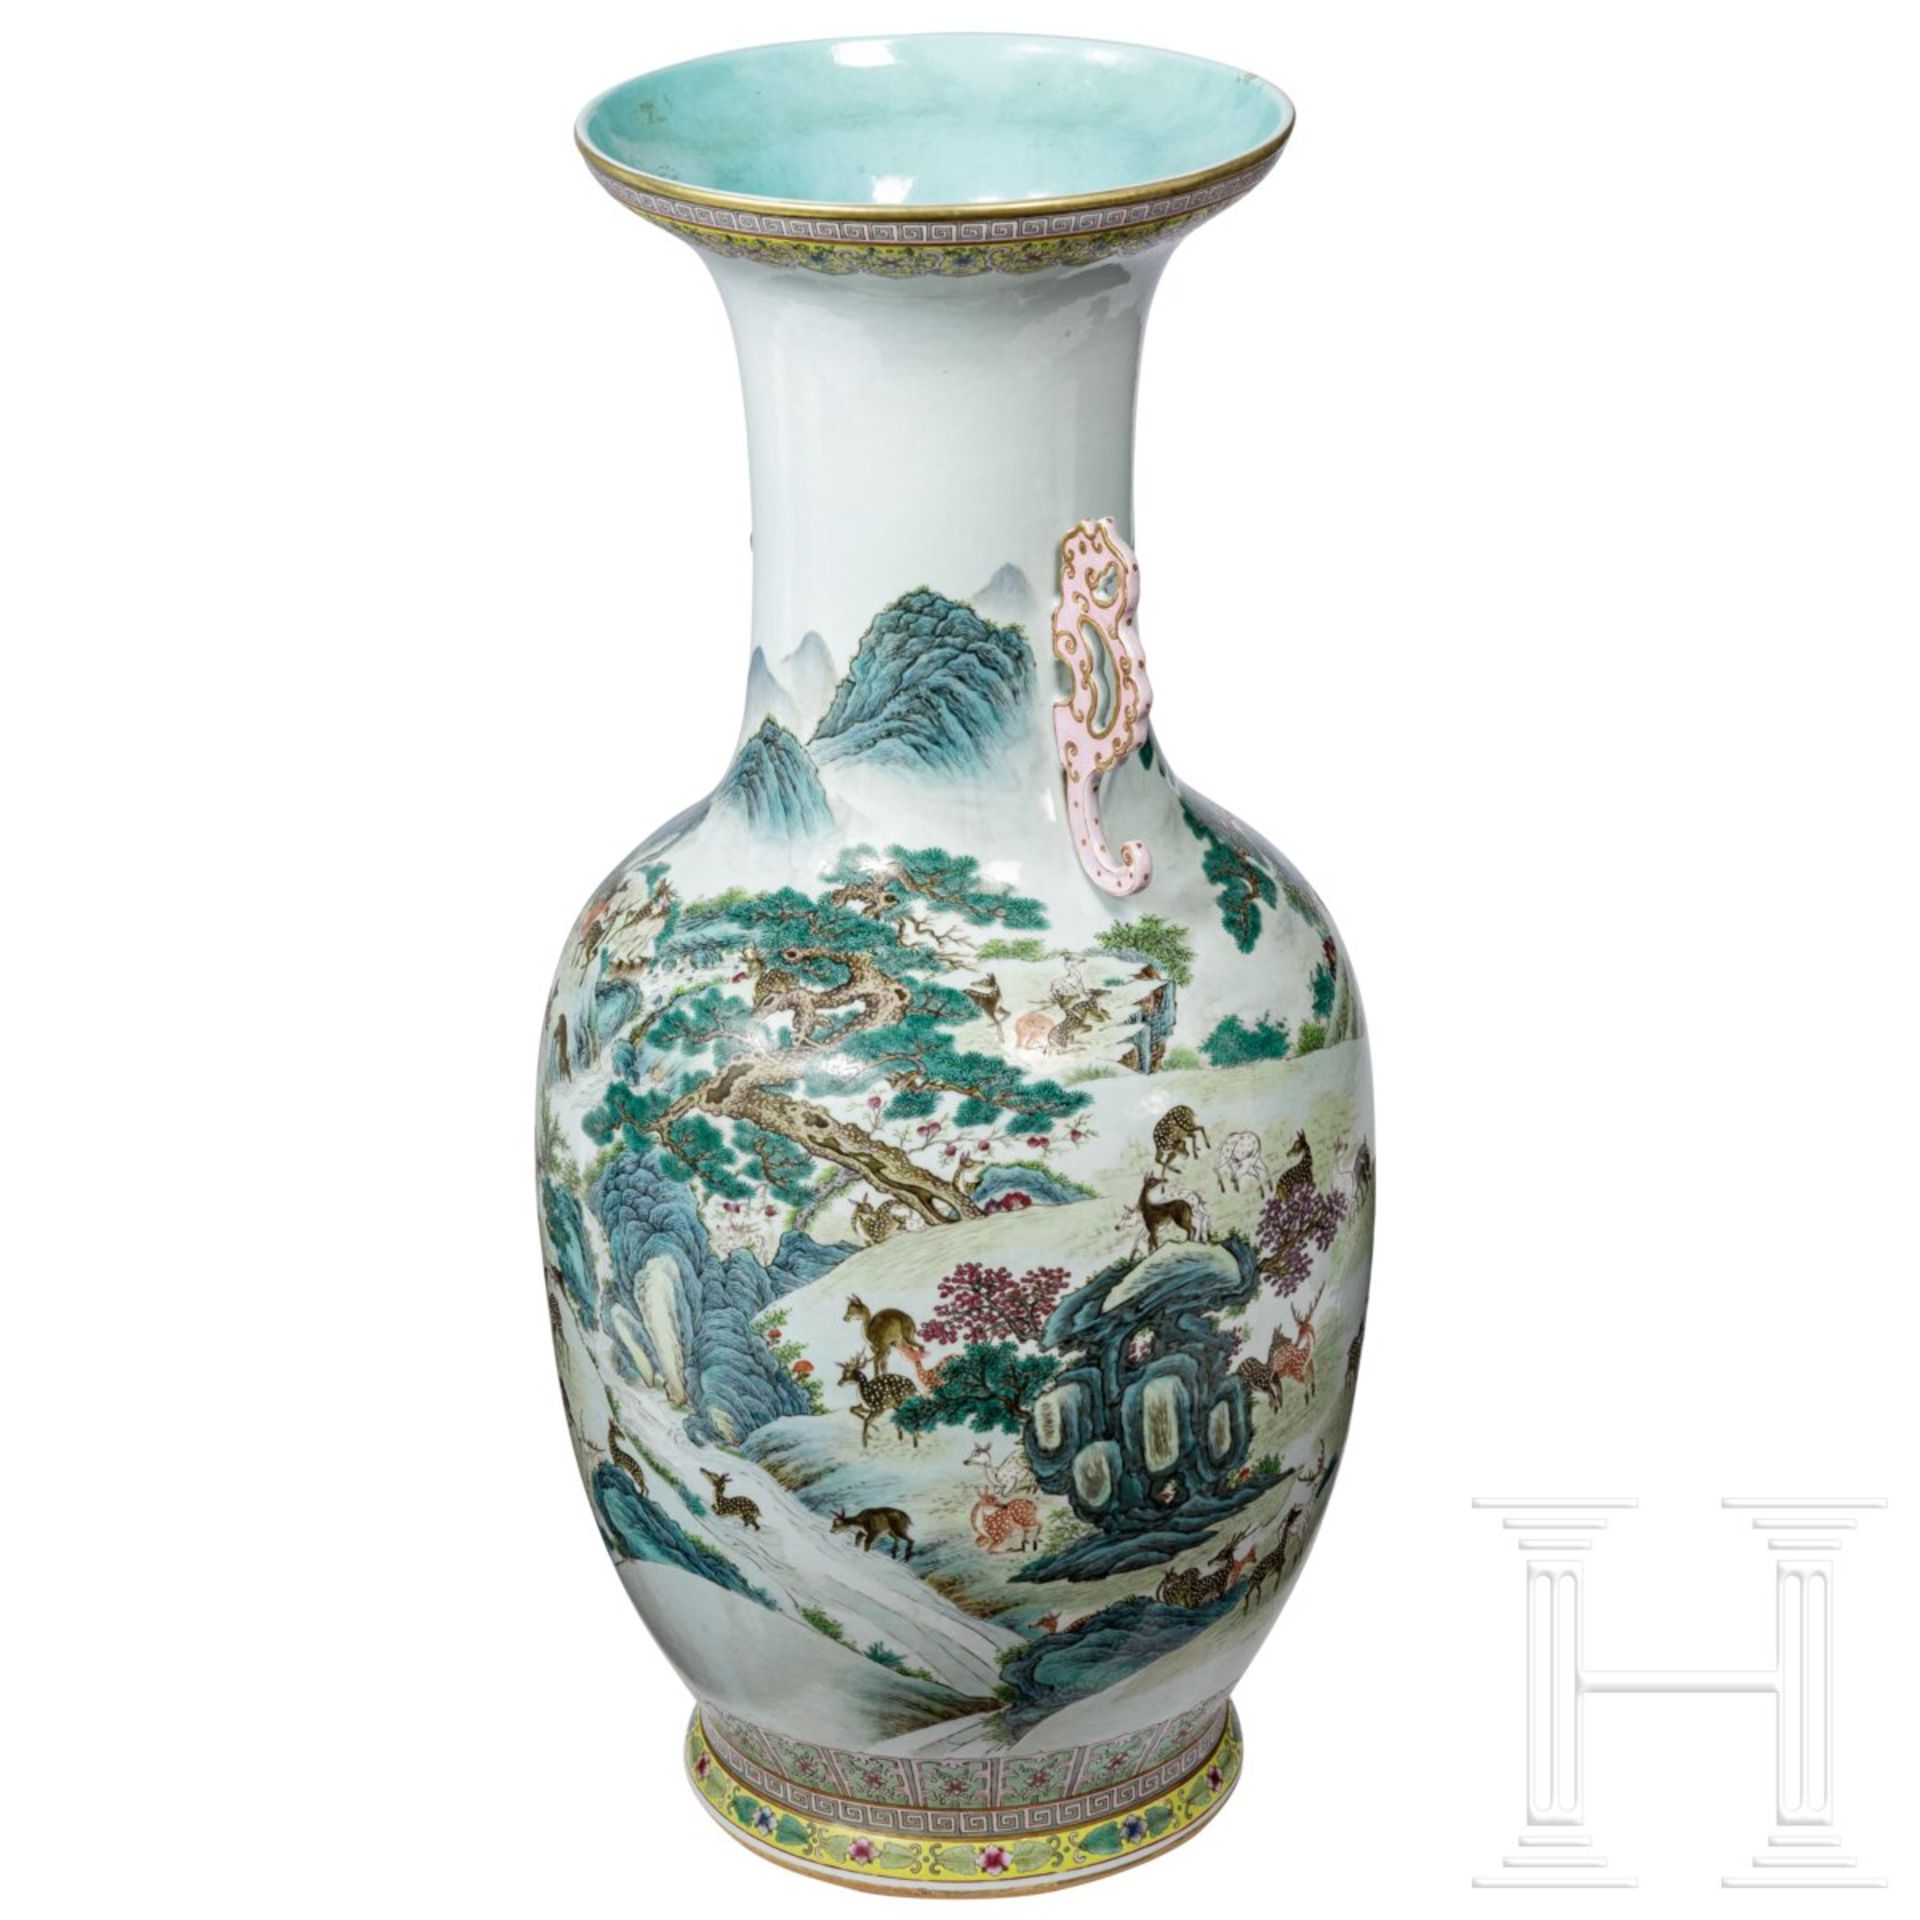 Monumentale Famille-rose-Vase mit "Hundert-Hirsche-Dekor", späte Qing-Dynastie oder frühe Republik,  - Bild 3 aus 24